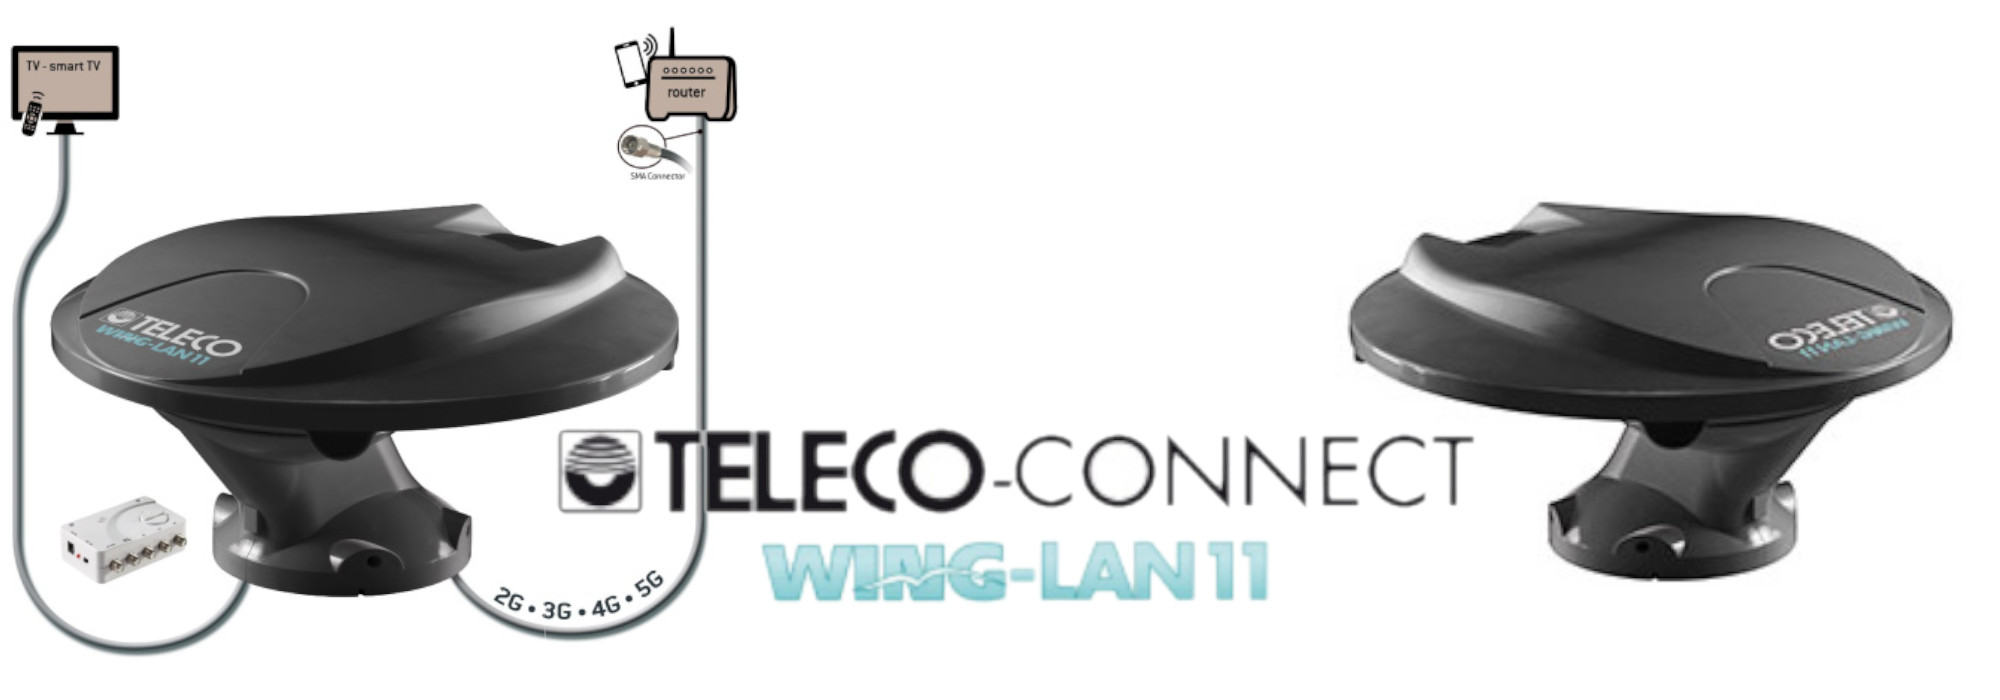 Neu: Wing-LAN 11 TV-Rundstrahlantenne von Teleco